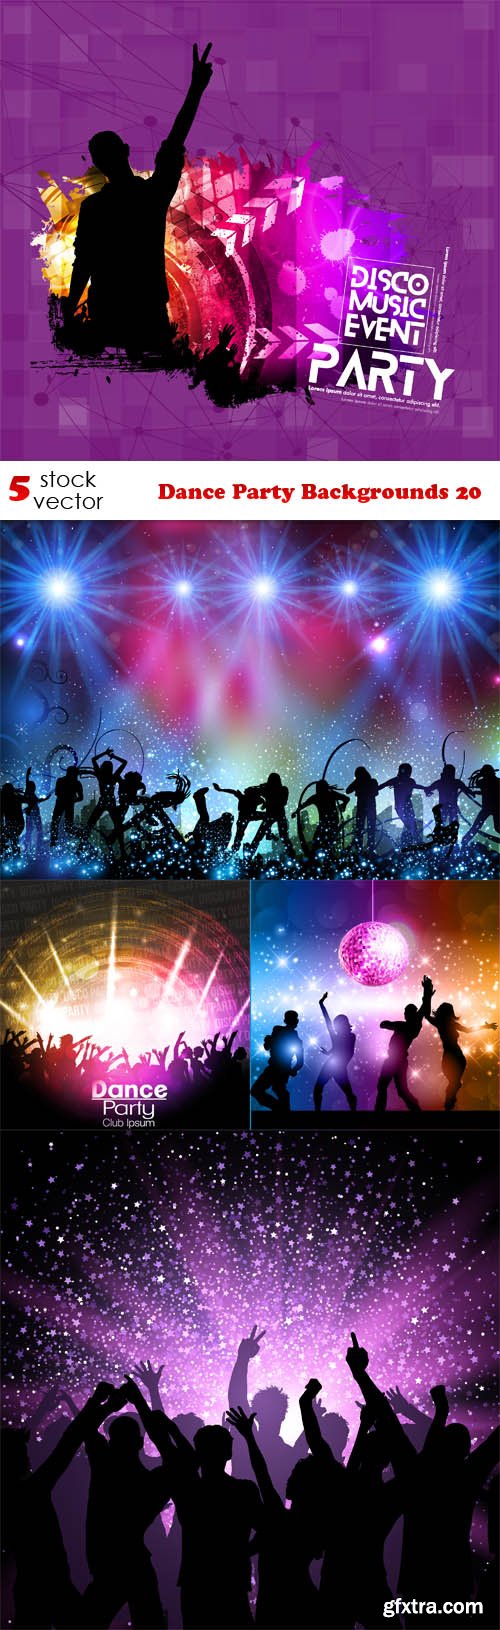 Vectors - Dance Party Backgrounds 20